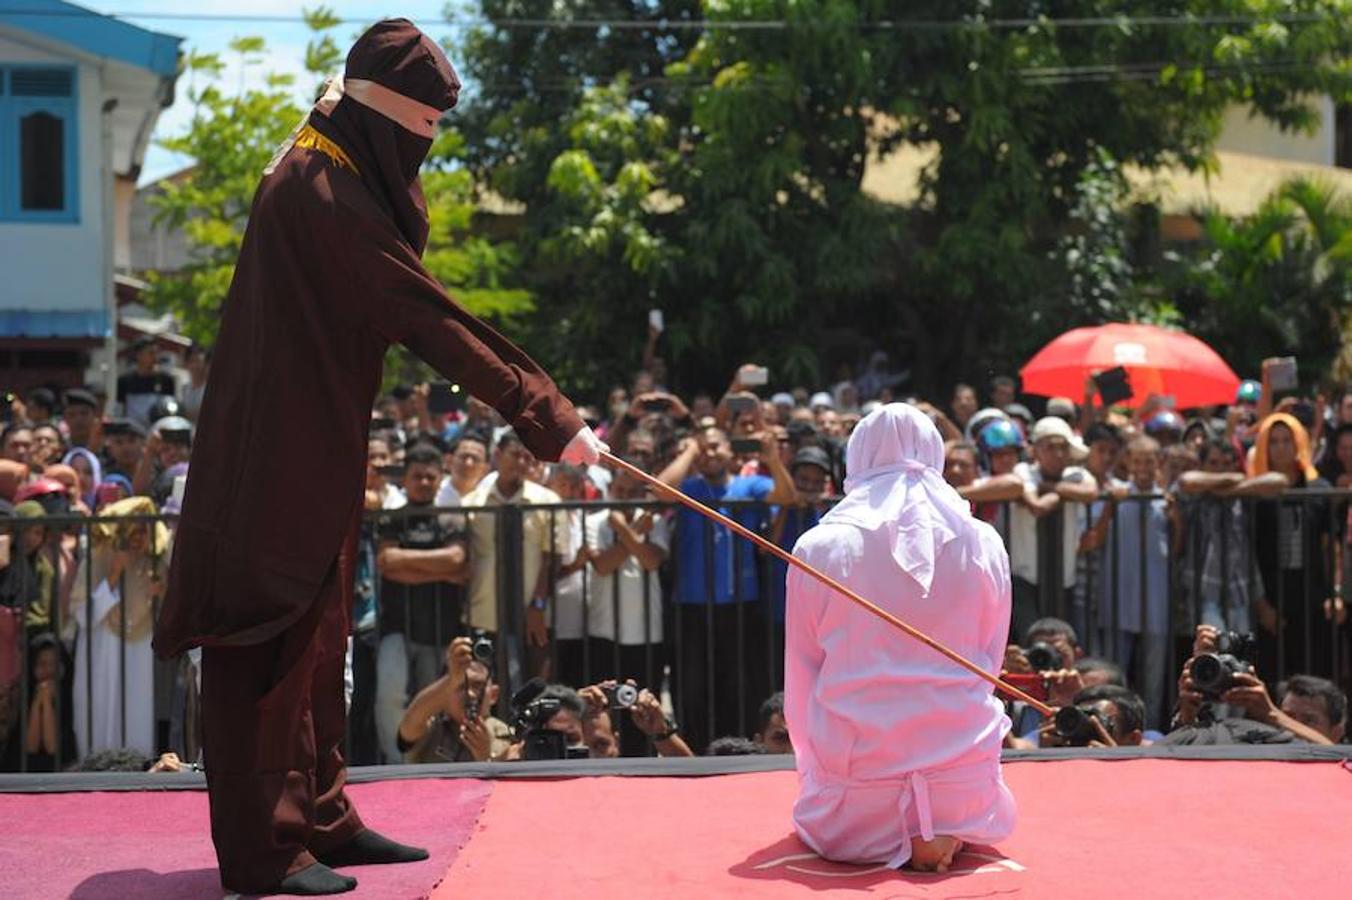 Un oficial religioso fustiga a una mujer por no respetar la sharia o ley islámica